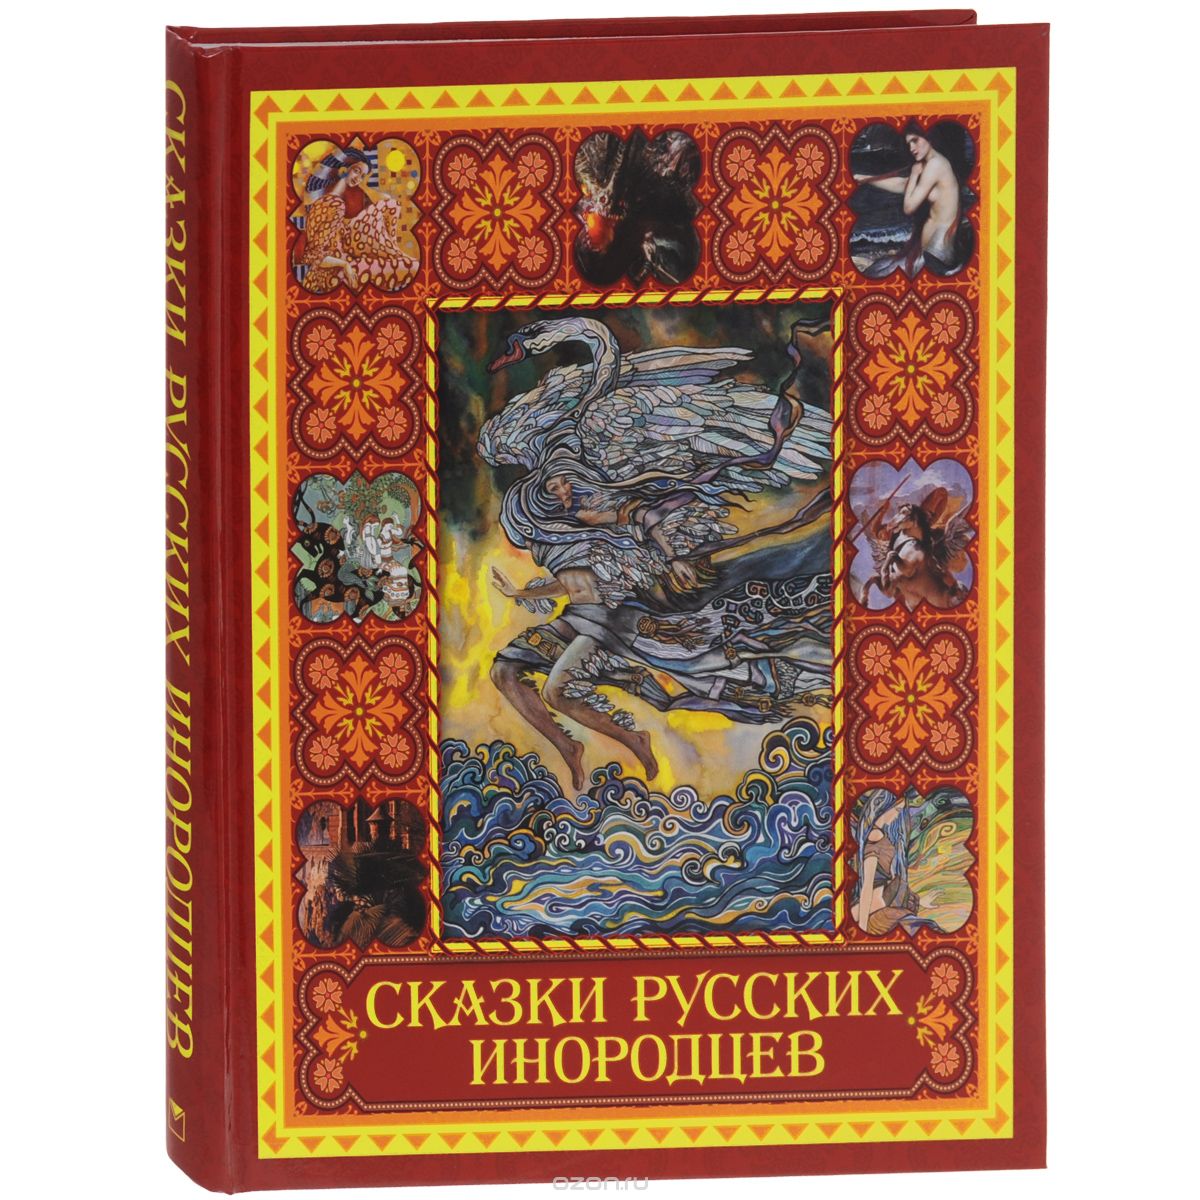 Скачать книгу "Сказки русских инородцев"